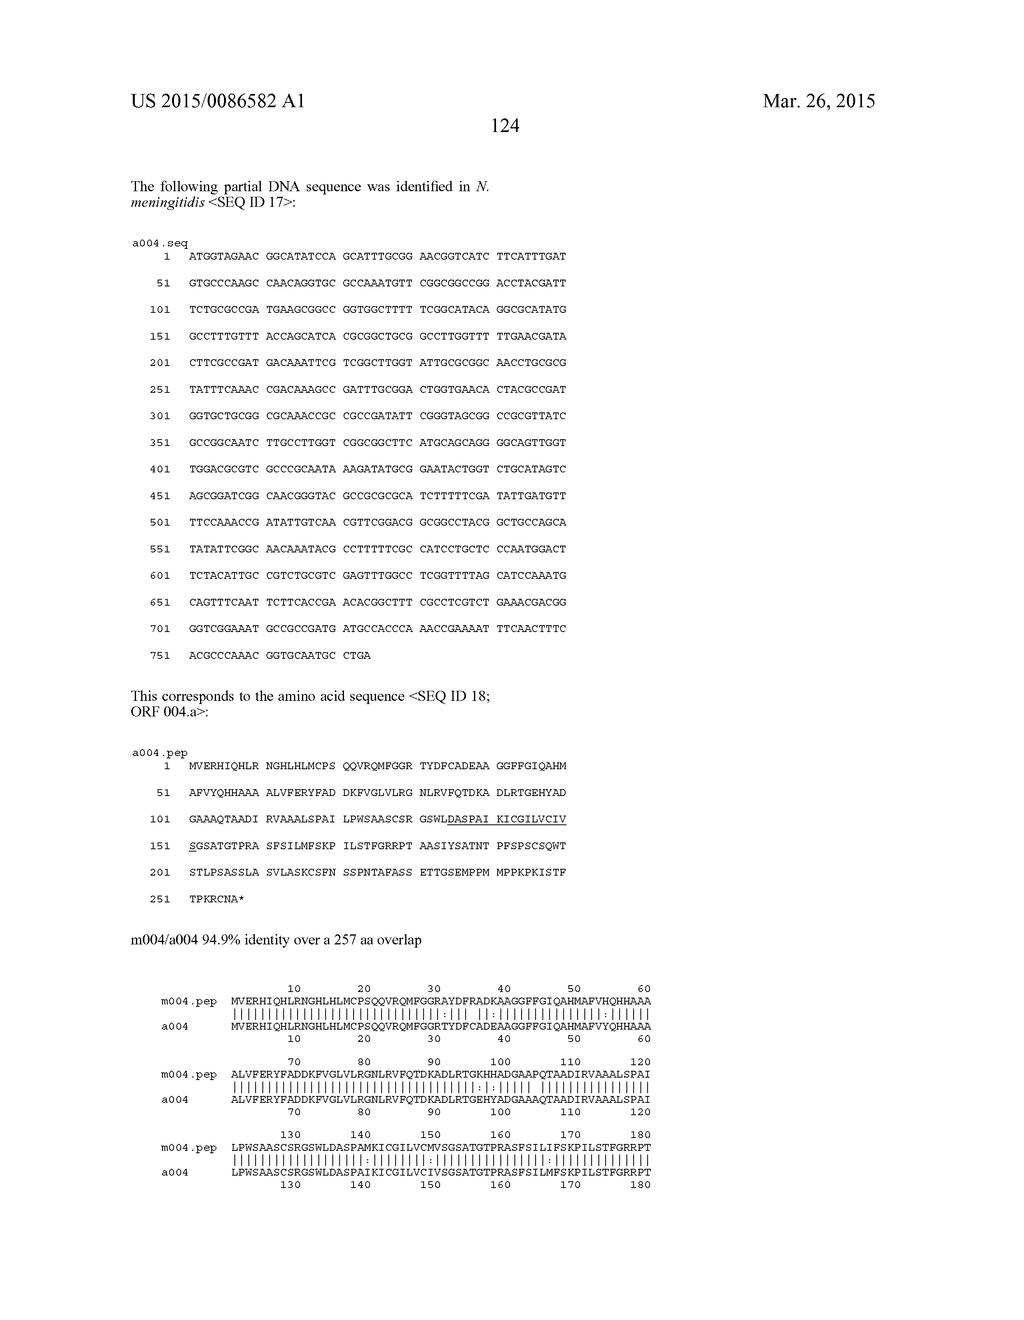 NEISSERIA MENINGITIDIS ANTIGENS AND COMPOSITIONS - diagram, schematic, and image 156